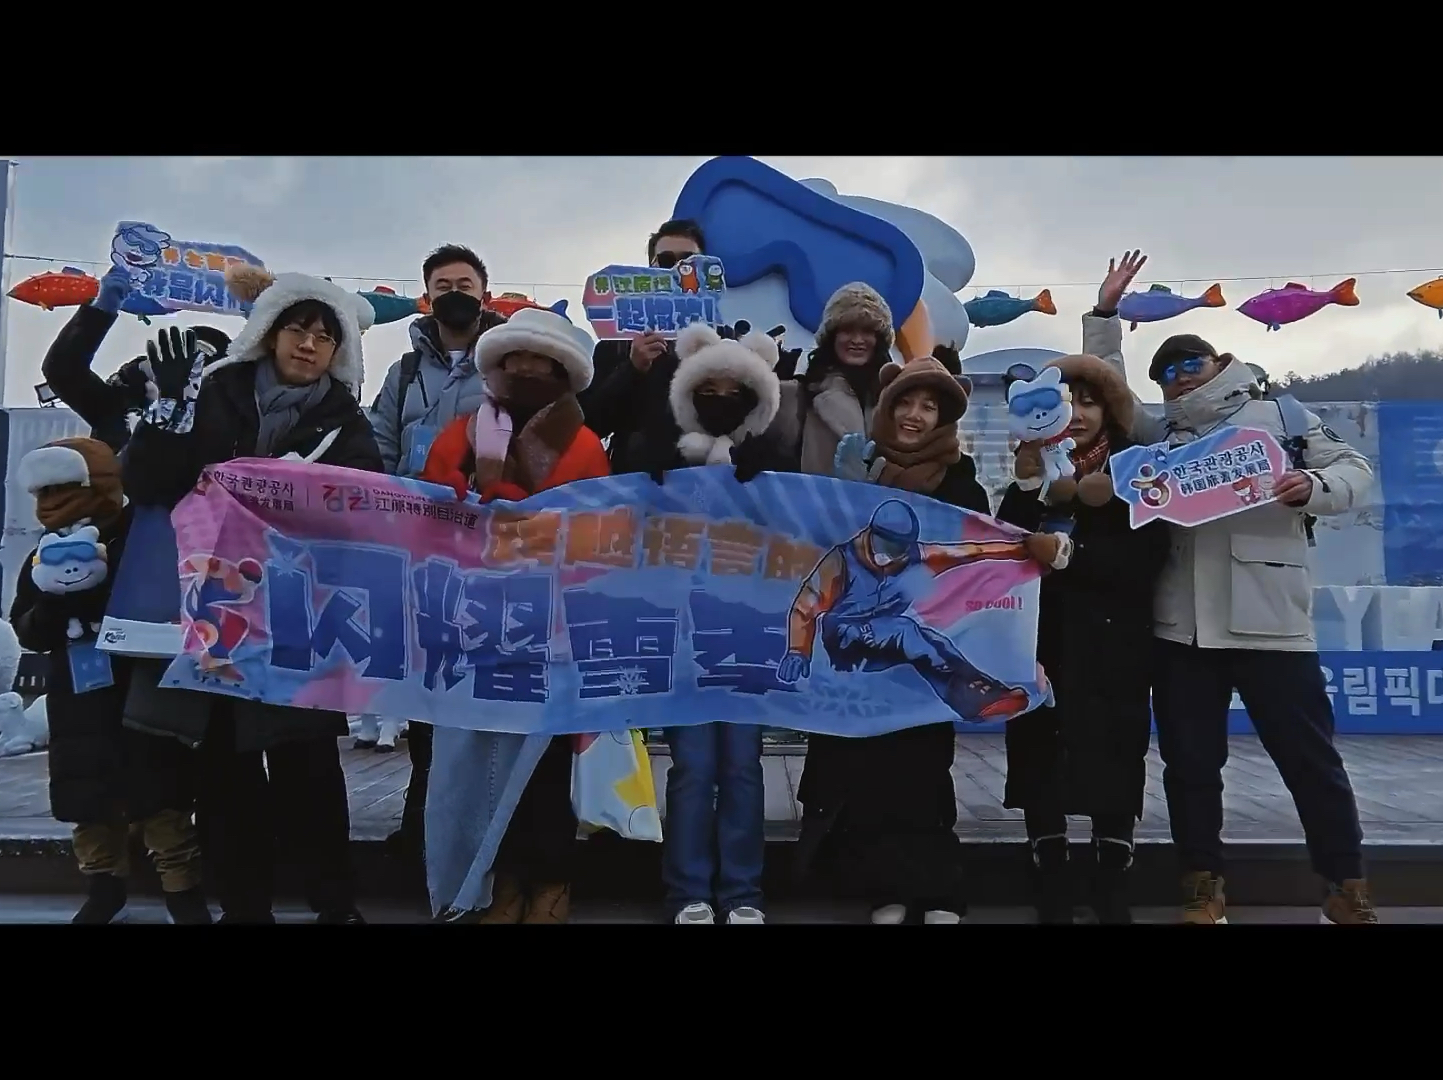 来韩国江原道的冰雪世界吧，在这里寻找属于你的雪景桃源